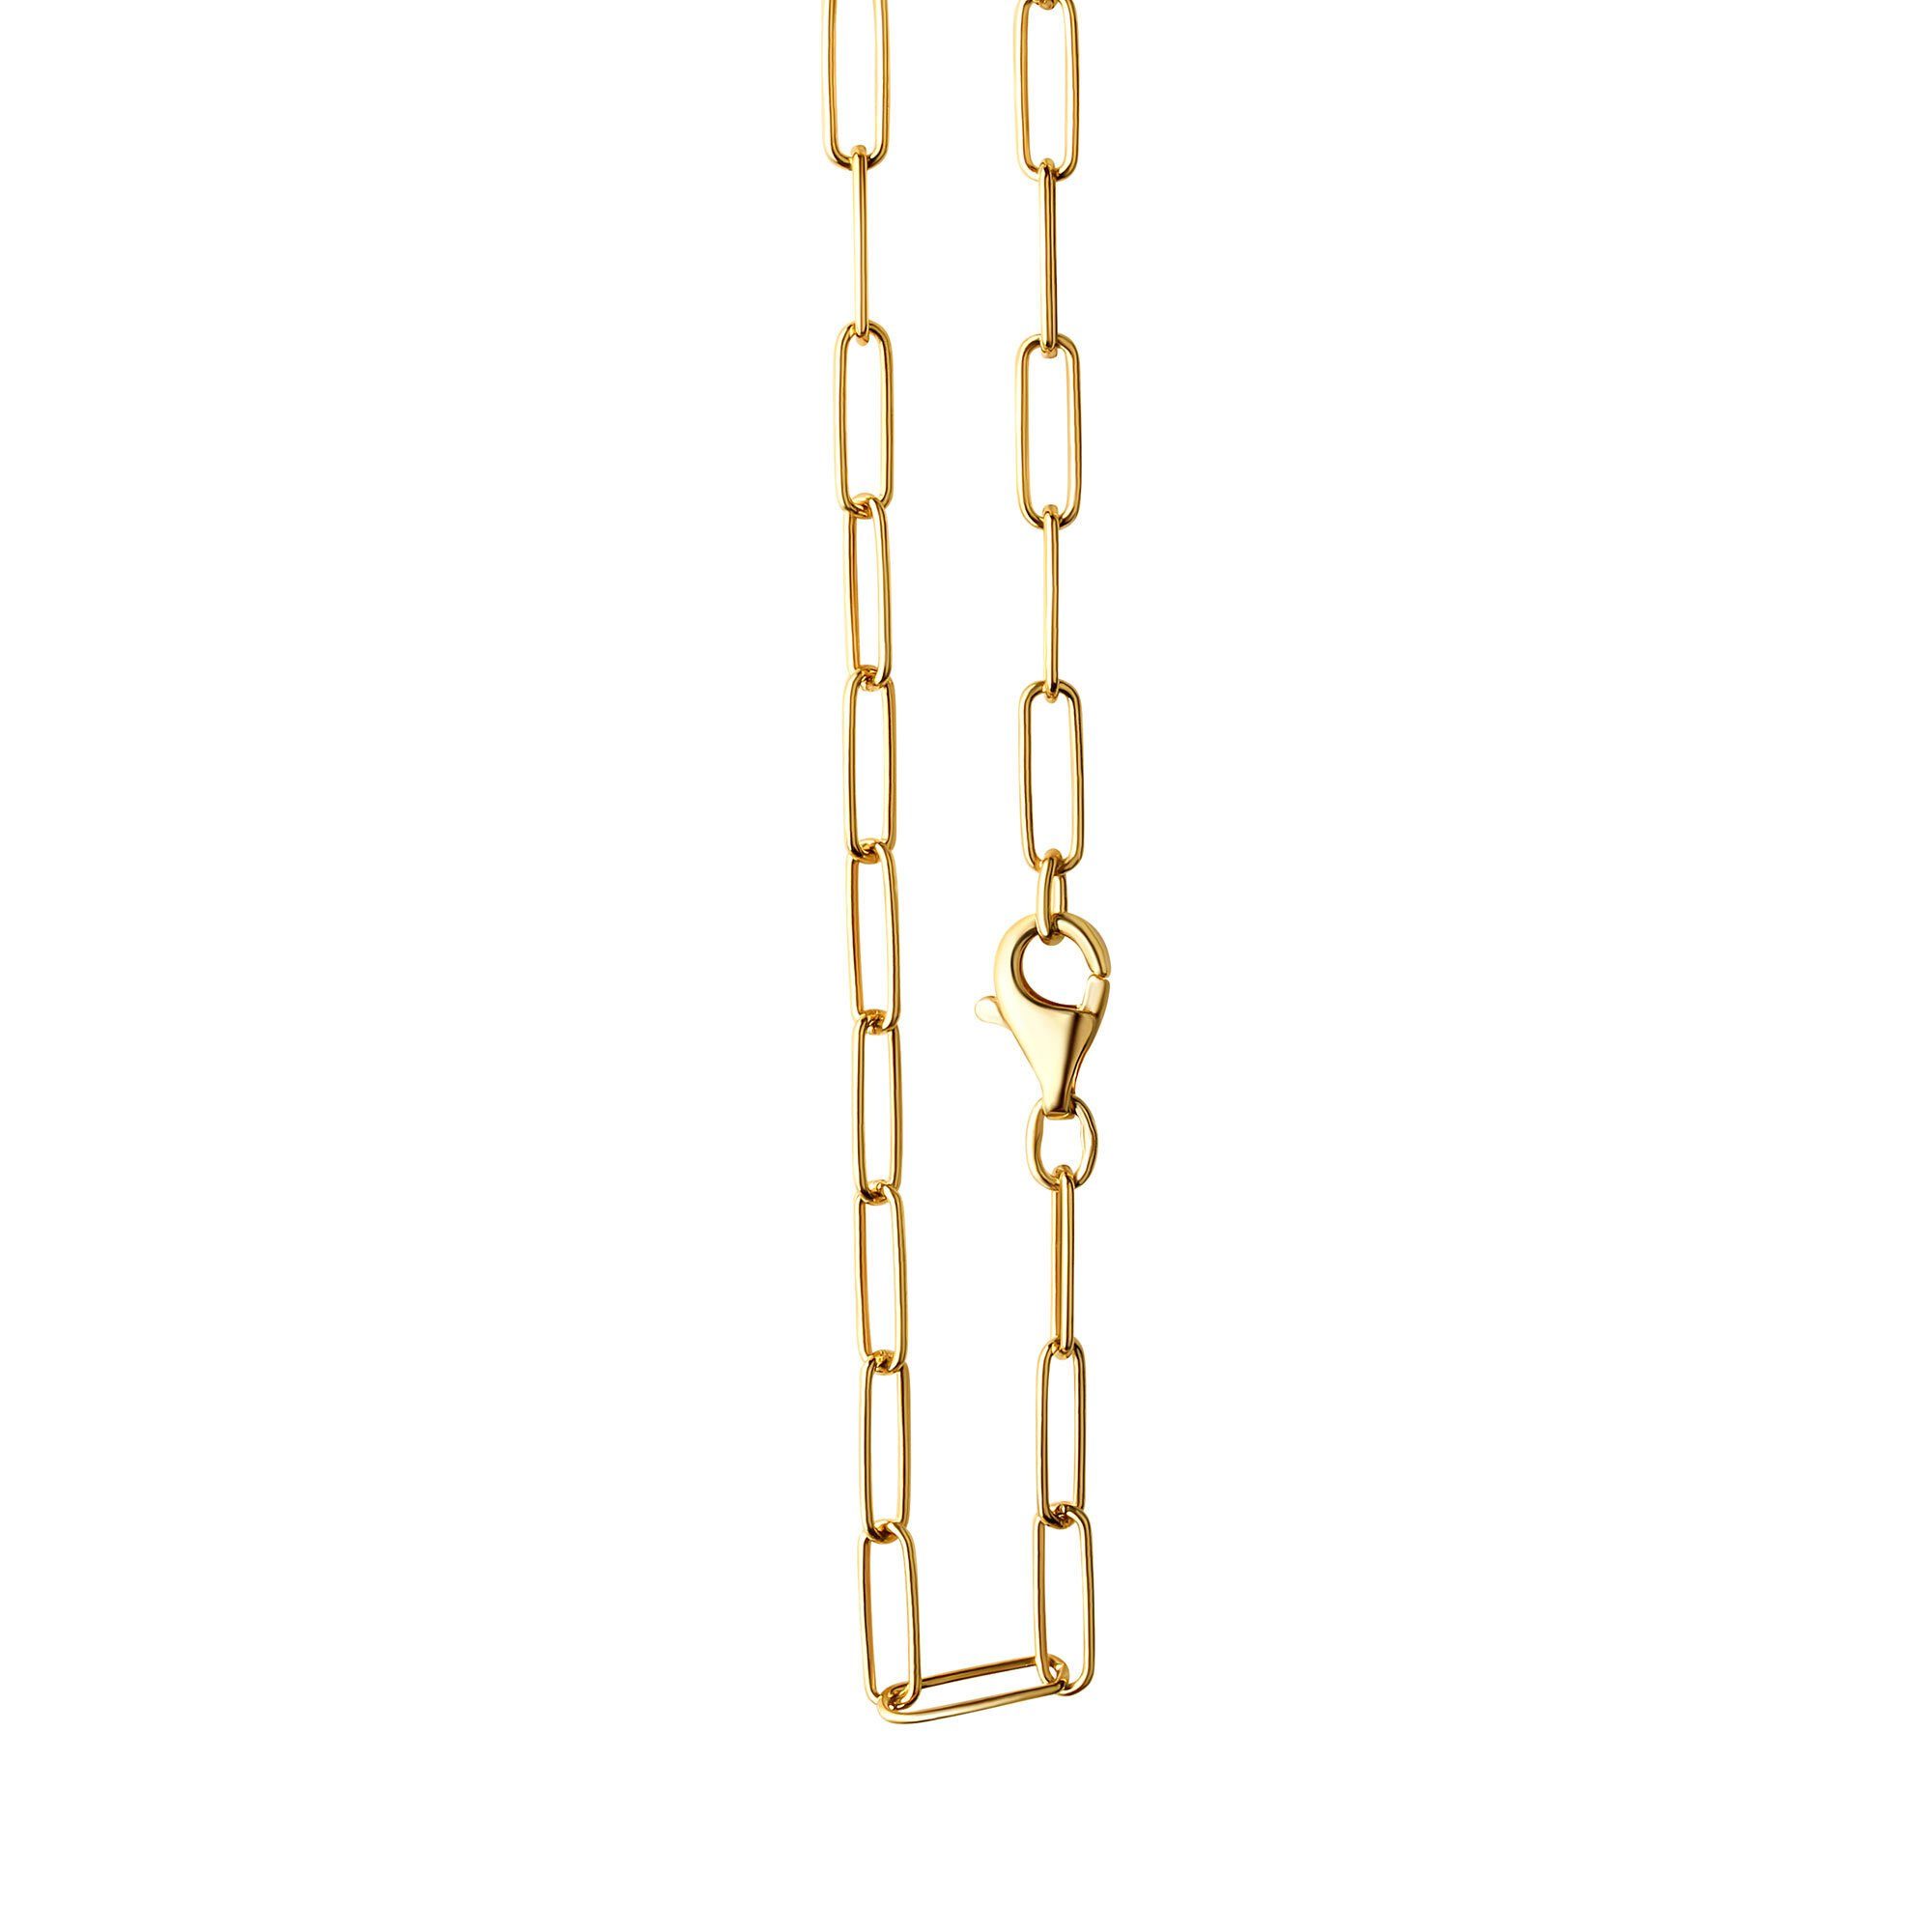 Vivance Collierkettchen 925/- Sterlingsilber vergoldet Gliederkette glanz 45 cm